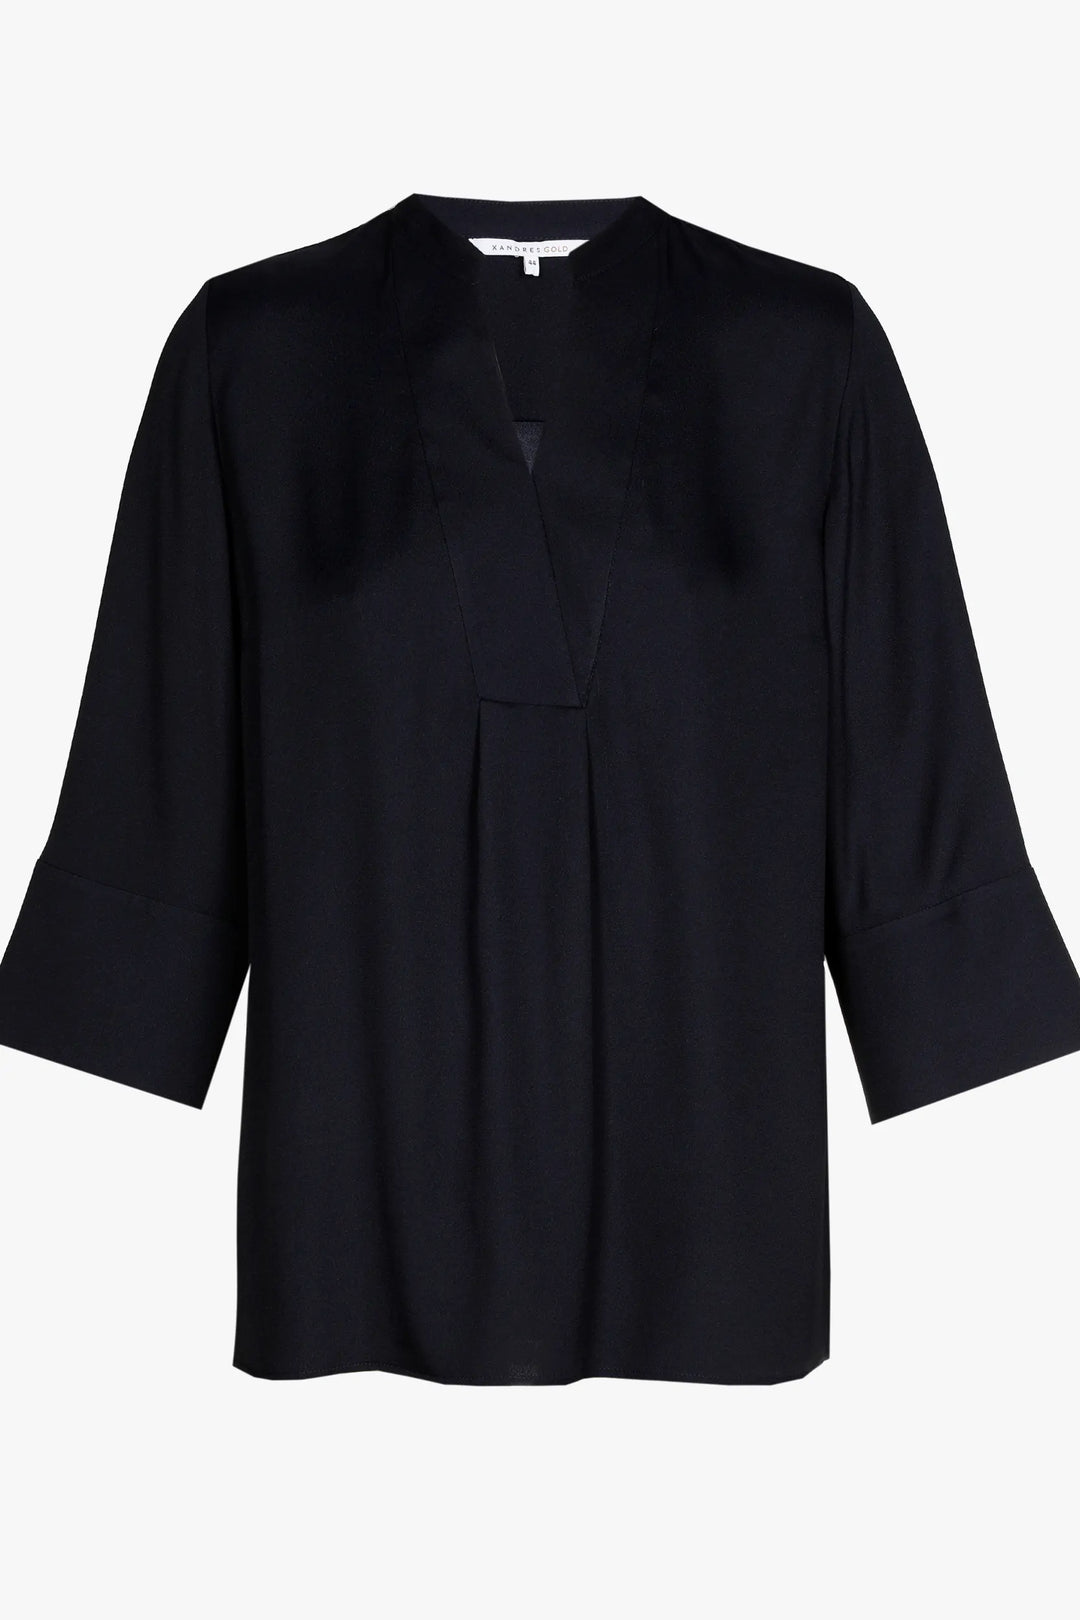 navy blouse met v-hals - xandres - - grote maten - dameskleding - kledingwinkel - herent - leuven